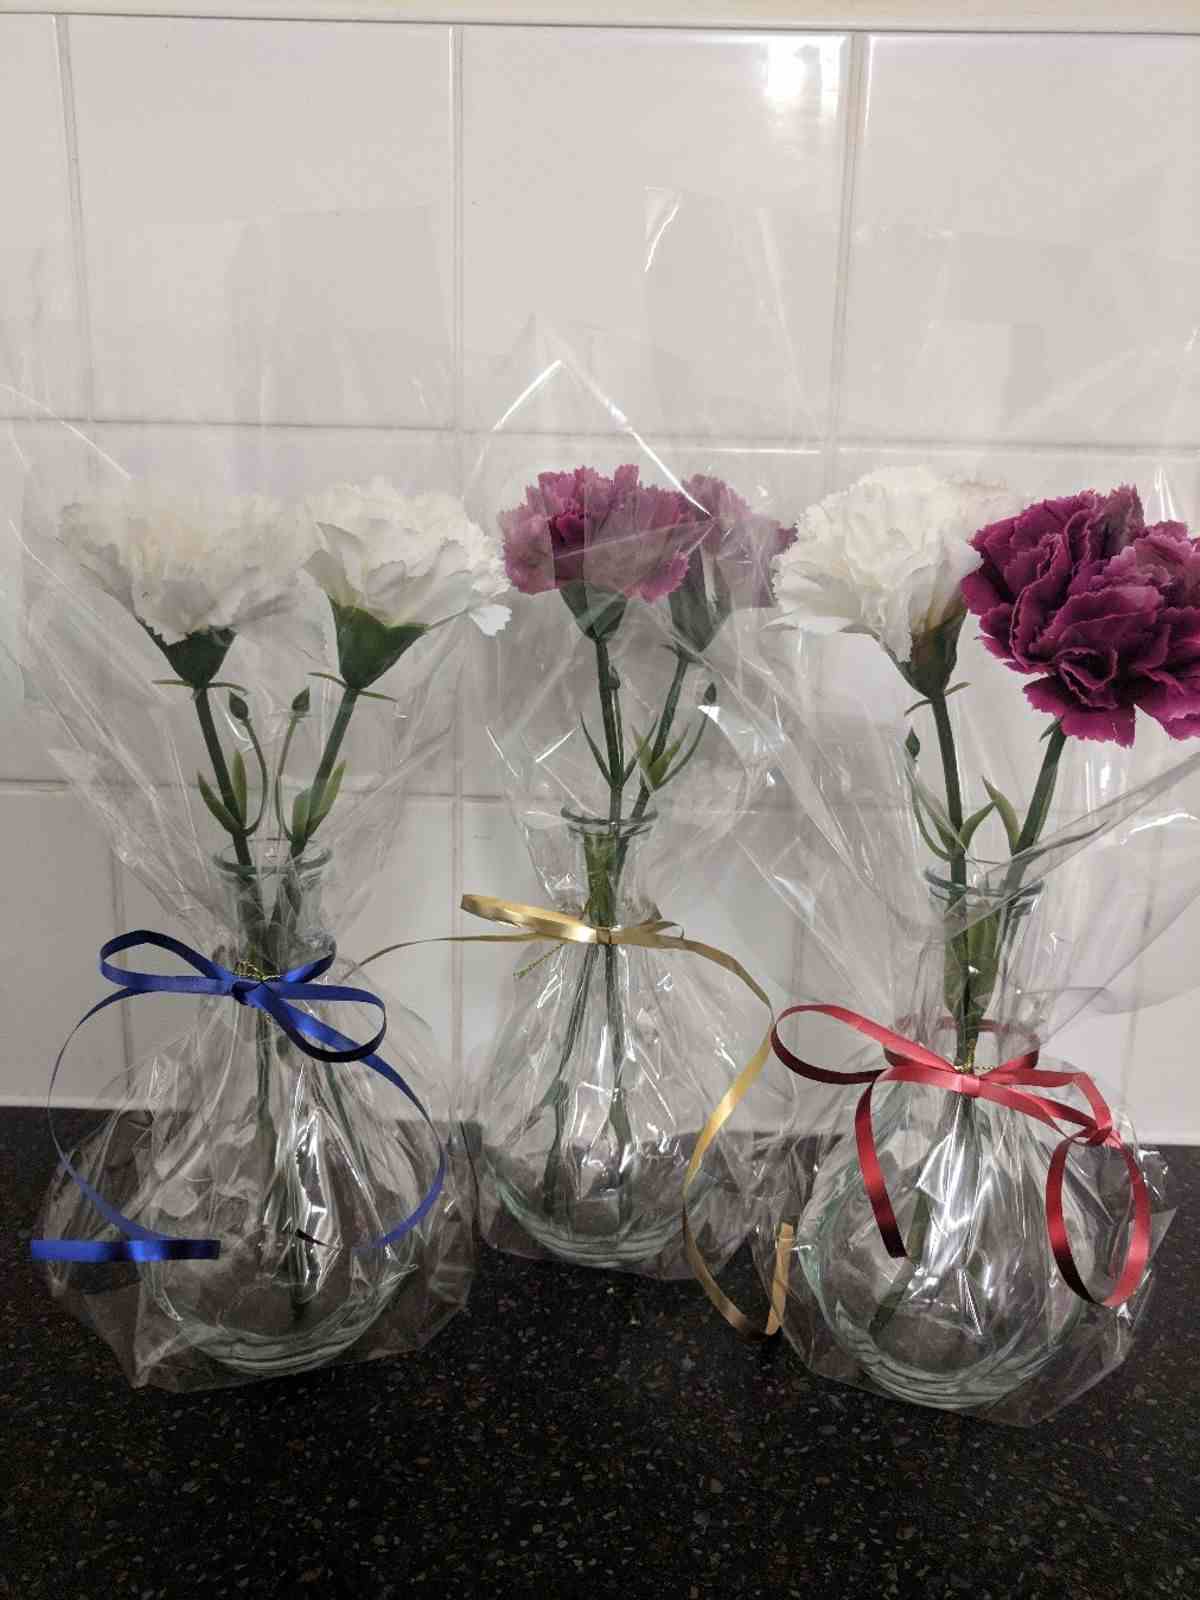 Slå in gåvor snyggt med folie - idé till vaser med nejlikor